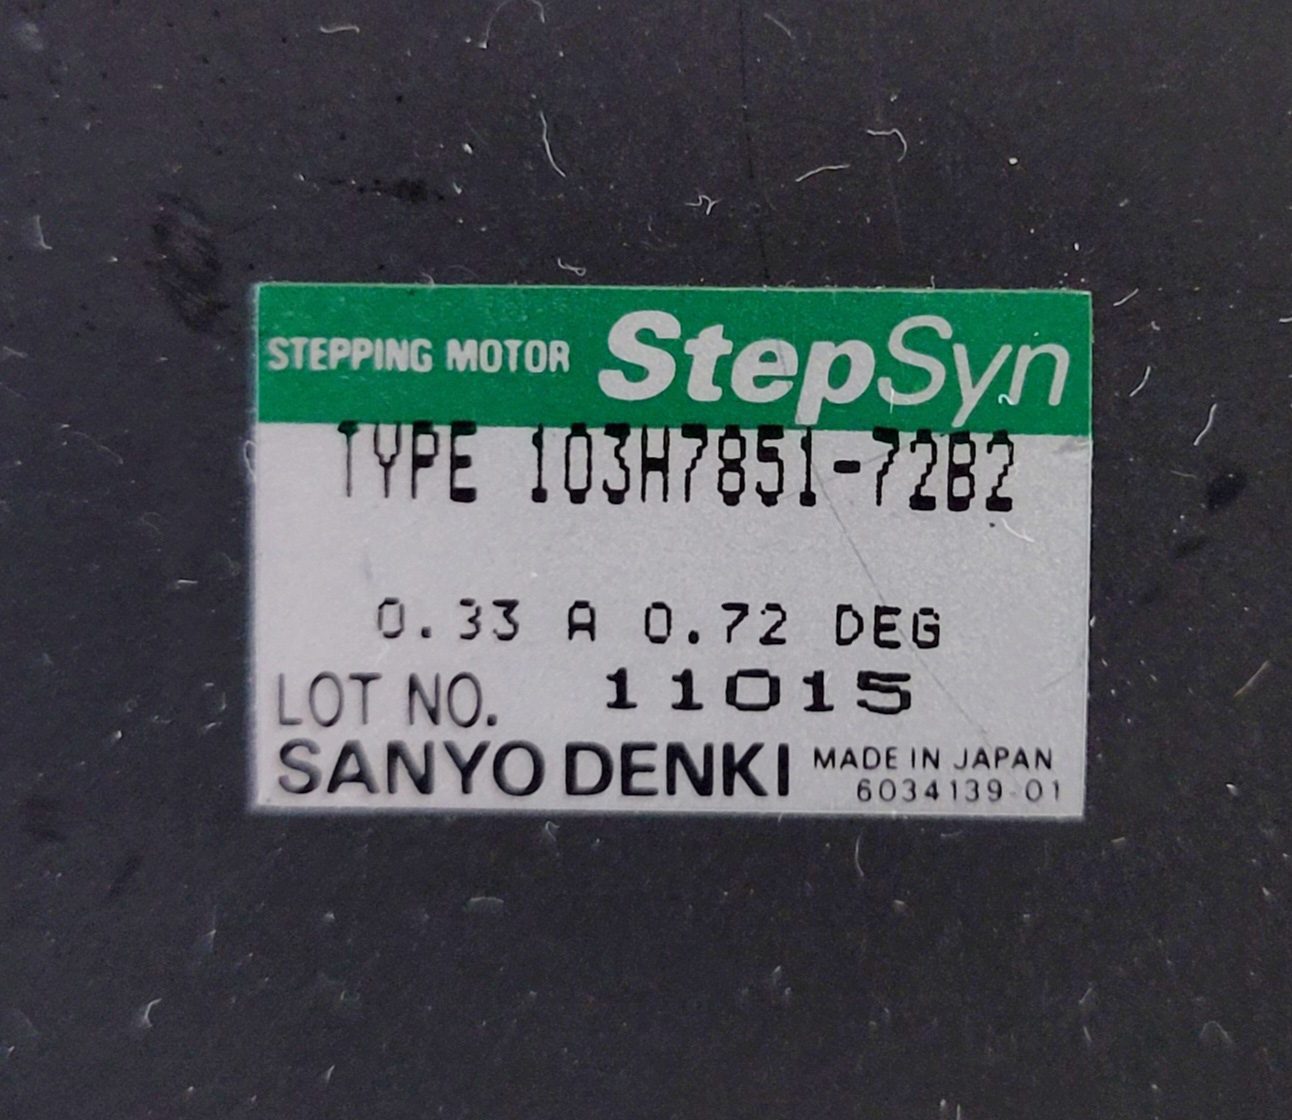 Buy Sanyo Denki 103 H 7851-72 B 2 Stepping Motor -65784 Online